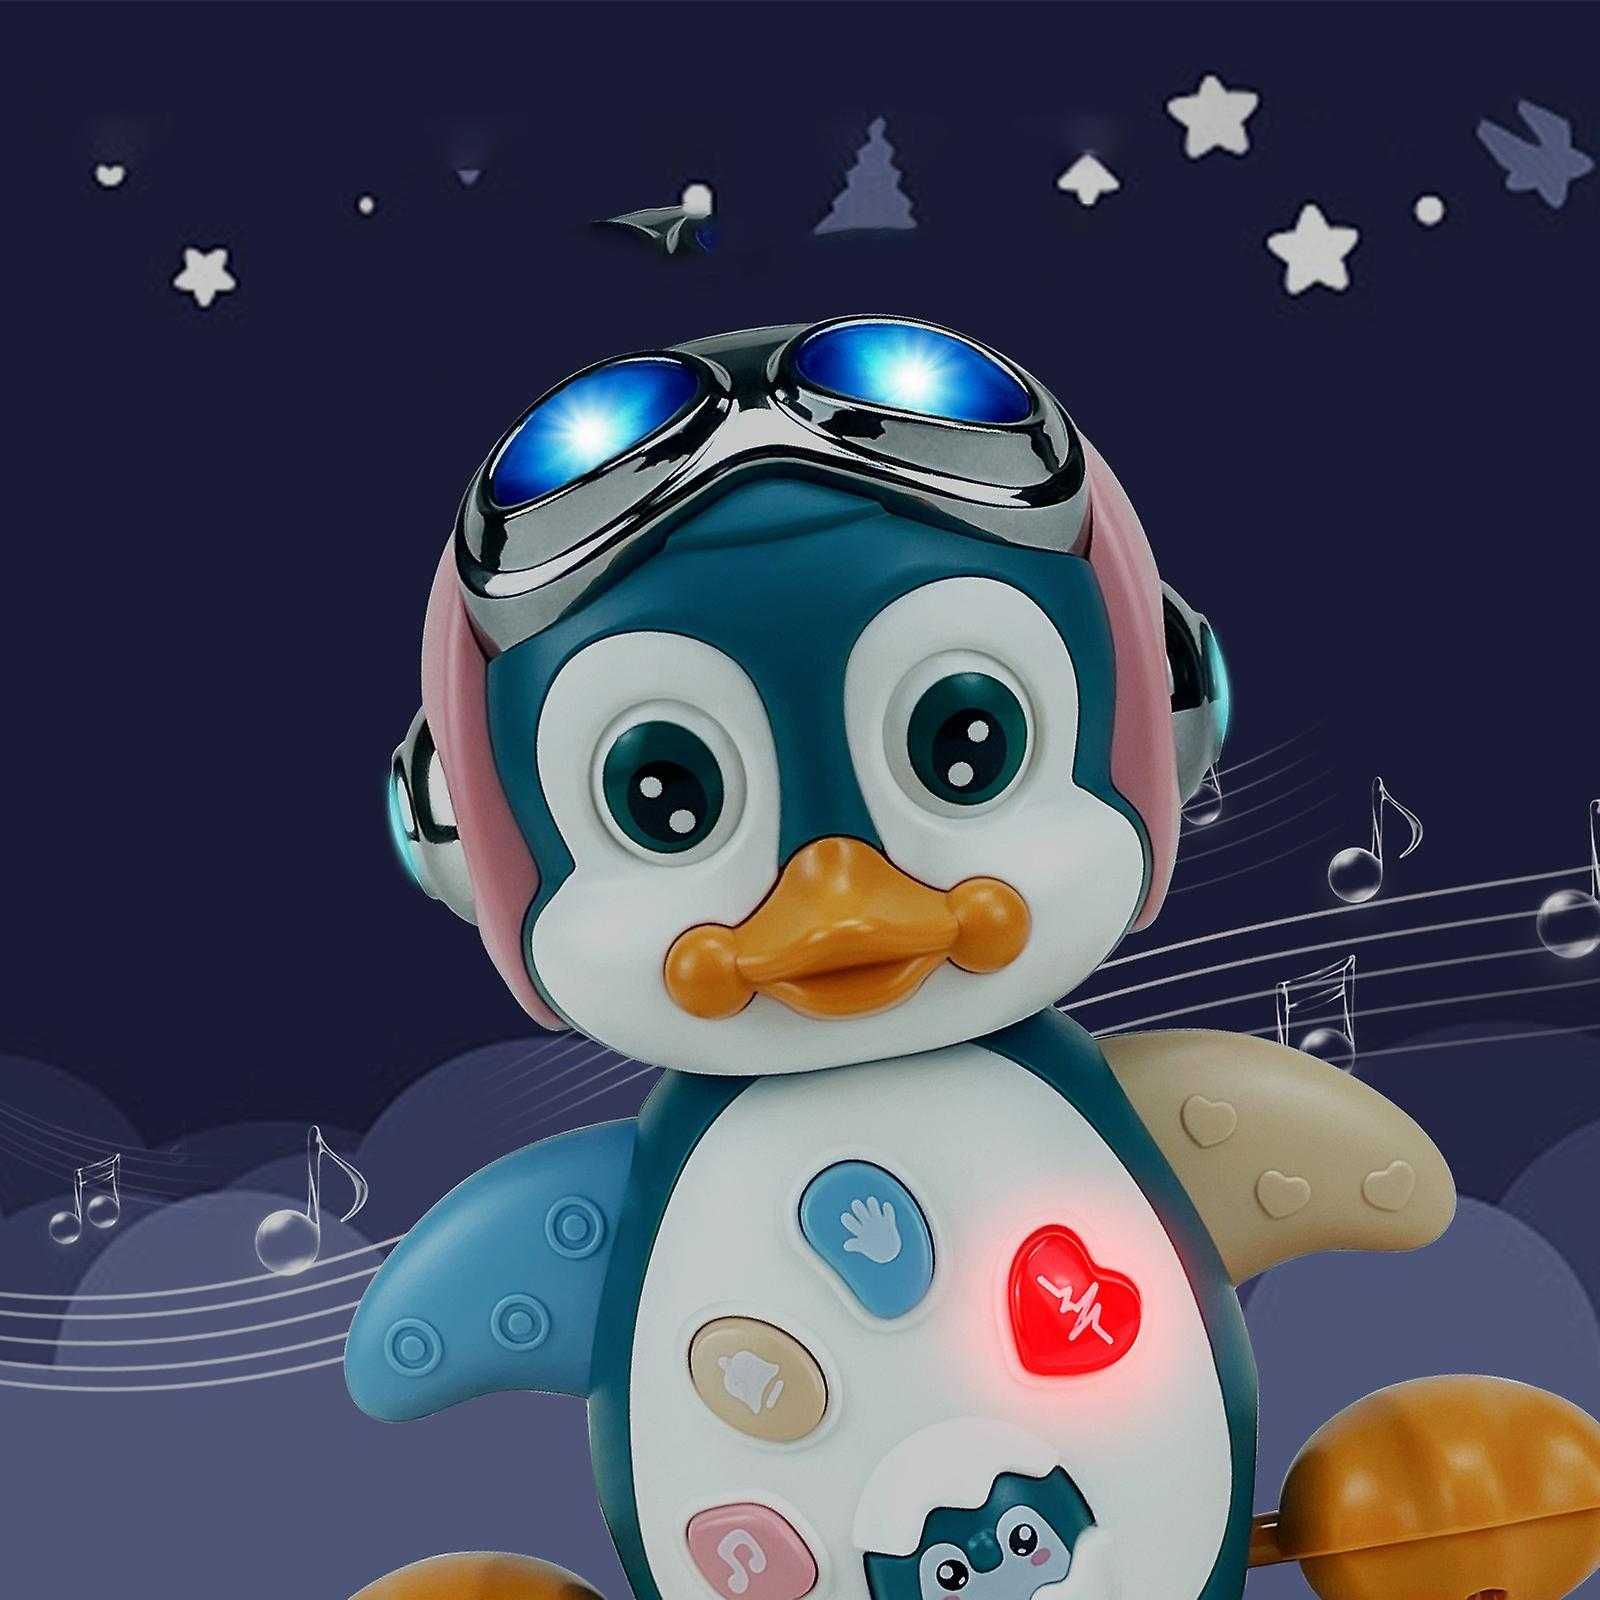 Интреактивен музикален пингвин. музика движение, светлини